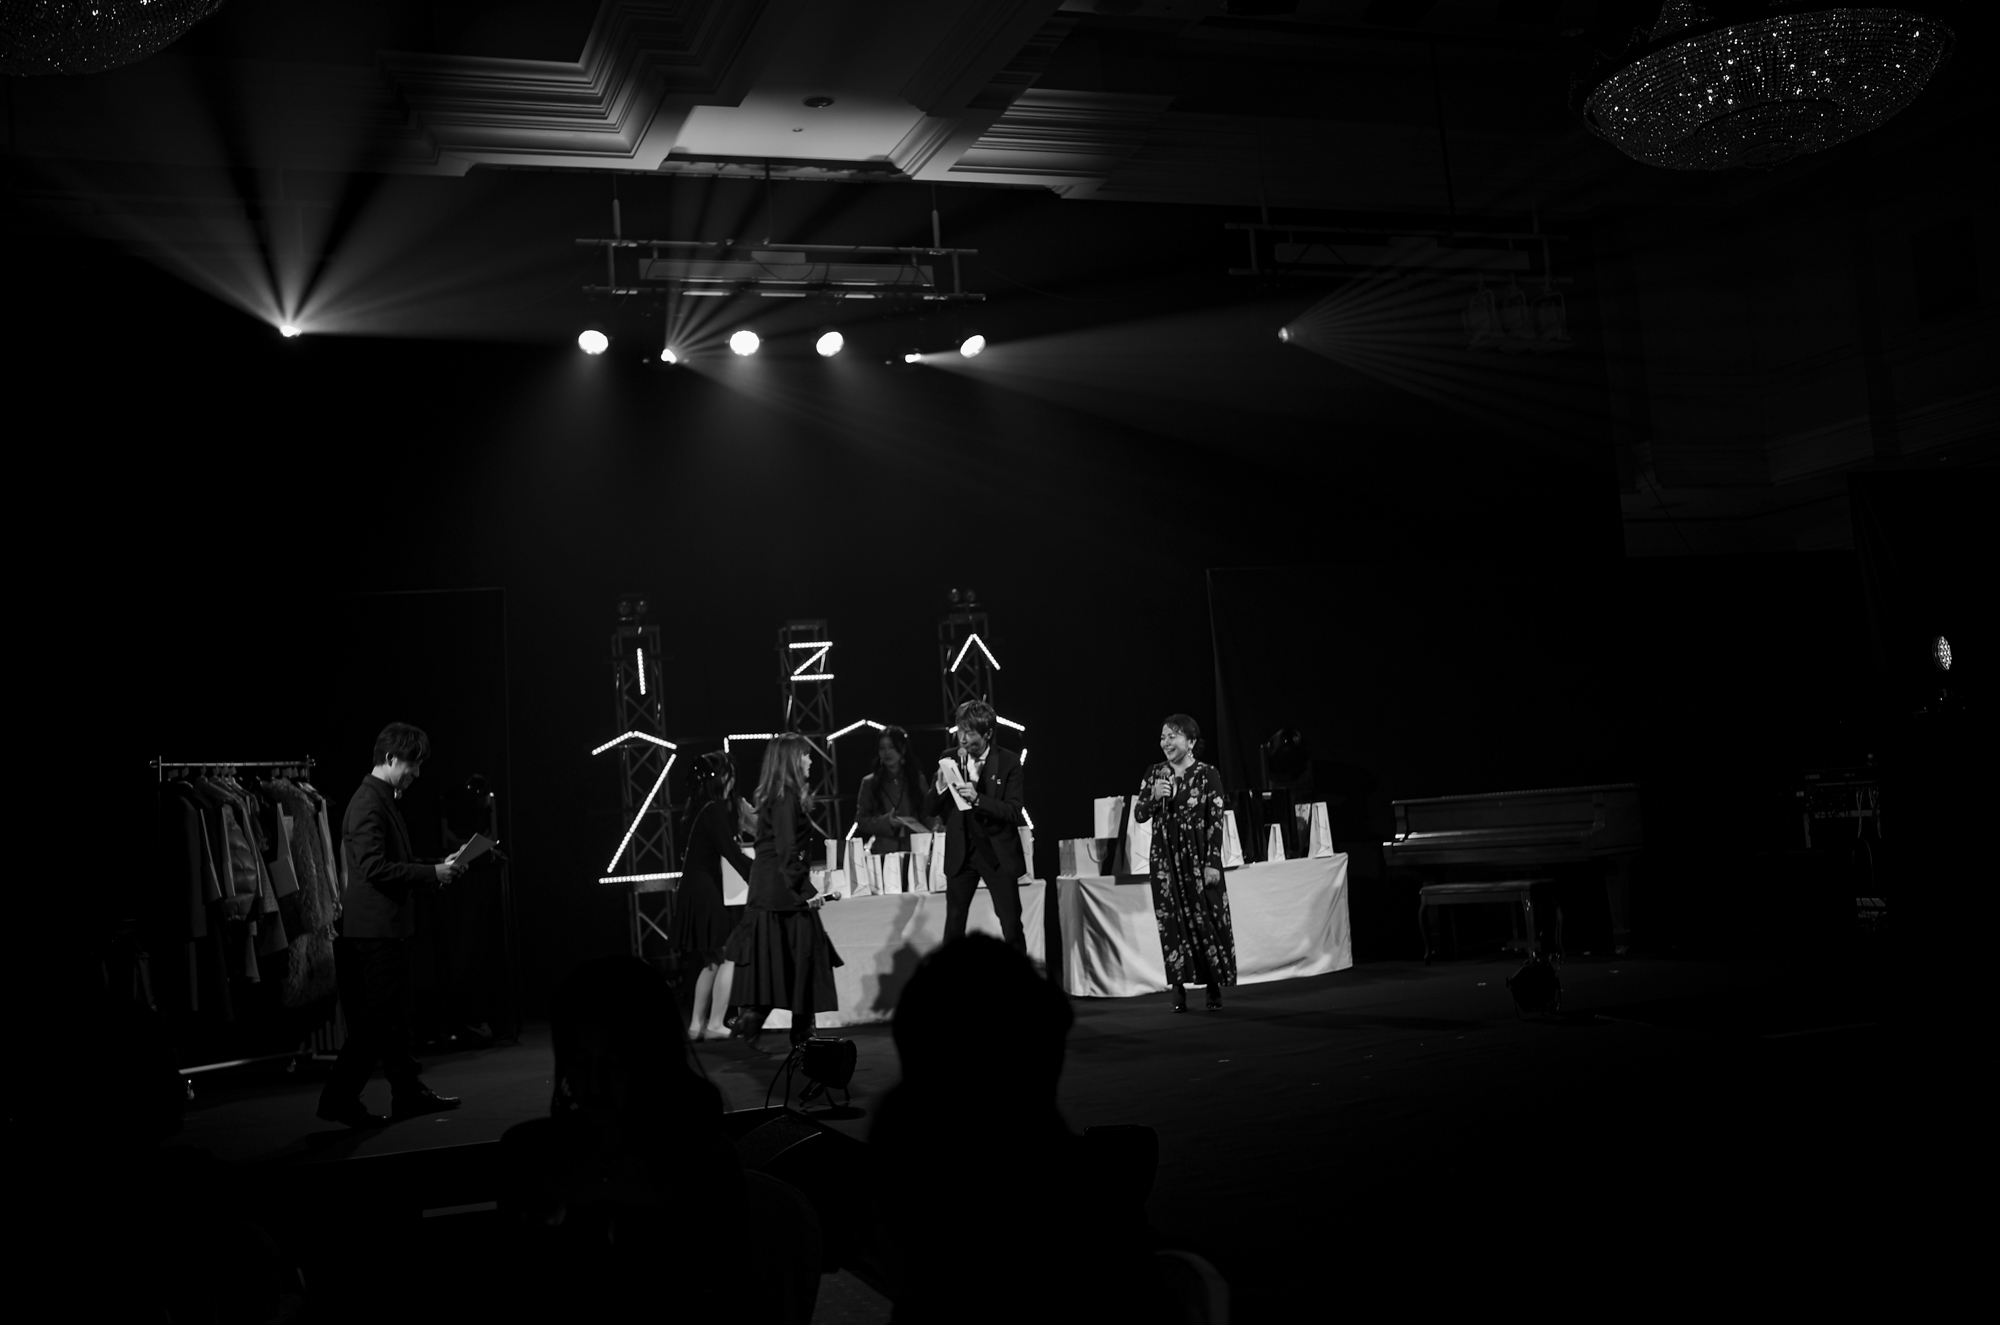 愛知 名古屋 Alto e Diritto altoediritto アルトエデリット IZA PINK CHRISTMAS 2023 // The Ritz-Carlton Osaka 2F The Grand Ballroom ファッションイベント ファッションショー ファッションチャリティイベント「I Z A PINK CHRISTMAS 2023」を12月20日(水)に開催いたします。2007年に乳がんの早期発見・診断・治療の大切さを伝える啓蒙活動であるピンクリボン運動のチャリティイベントとしてスタートし、今年で16回目を迎えます。豪華なゲストによるパフォーマンスやファッションショー、トークショーを開催するほか、チャリティ抽選会を実施。日時:12月20日(水) 開場:17：00 開演 :18：00会場:ザ・リッツカールトン大阪 2F ザ・グランド・ボールルーム会費:55,000円コースディナー・シャンパーニュ ＆ワインフリーフロー特典:I Z A ショッピングチケット10,000円を贈呈お申し込みはお電話で承りますI Z A Osaka📞06-6533-7877I Z A Tokyo📞03-3486-0013※会費のご入金確認をさせて頂き次第、受付完了となります。お席は先着順に決定致します。予めご了承下さい。【I Z A PINK CHRISTMAS について】2007年に乳がんの早期発見・診断・治療の大切さを伝える啓蒙活動のピンクリボン運動のファッションチャリティイベントとしてスタート。「ファッションを通して人々に夢を与え、幸せにする」という思いをコンセプトに、毎年12月のクリスマスイベントとして開催してきました。それからピンクリボンに限らず、災害支援をはじめ、動物愛護活動を行う「公益財団法人動物環境・福祉協会Eva」や、世界の妊産婦と女性の命と健康を守るために活動する「公益財団法人ジョイセフ」などのチャリティも実施。ピンクリボン運動、災害支援、動物愛護のほか、女性支援、LGBTQ+、ダイバーシティ、サステナブルなどメッセージを発信します。THE RITZ -CARLTON OSAKA ザ・リッツカールトン大阪 〒530-0001 大阪府大阪市北区梅田２丁目５−２５  大阪梅田の５つ星ホテル西日本の玄関口、大阪梅田に位置するザ・リッツ・カールトン大阪。シルクハットを被ったドアマンがお迎えする正面扉から一歩足を踏み入れると、18世紀の英国貴族の邸宅を彷彿とさせる優雅な空間が広がります。館内にはミシュランの星に輝くフランス料理「ラ・ベ」、日本料理「天ぷら花筐」を含む6つのレストラン＆バーを擁し、24～37階の高層階に位置する全291の客室からは、大阪市内の美しい街並みを一望いただけます。また、洗練されたクラブラウンジでは、専属のコンシェルジュがお客様にユニークで思い出に残る体験をお約束いたします。当ホテルは、日本初のザ・リッツ・カールトンとして開業して以来、四半世紀以上にわたり、心のこもったパーソナルなおもてなしで紳士淑女の皆様をお迎えしてまいりました。2023年には『フォーブス・トラベルガイド』において、大阪で初めて“五つ星”の称号を獲得。日本のラグジュアリーホテルのフラッグシップ的な存在として、卓越したサービスをご提供しております。 2023年4月29日 4月30日 HOTEL ALLAMANDA AOYAMA HOTEL ALLAMANDA AOYAMA ホテル アラマンダ 青山 〒107-0061 東京都港区北青山2-7-13 チェックイン　アラマンダ青山 https://hotel-allamanda-aoyama.jp/ Mount Fuji 2022年12月27日火曜 2022.12.25 アルトエデリット Alto e Diritto 師走 虹霓 こうげい 中華 2022年12月20日 火曜  四川料理 一星 移転 那古野 虹霓さん 高級中華 愛知県名古屋市西区那古野1-34-16 052-756-3939 四川料理、中華料理 https://www.instagram.com/china.kougei/# https://omakase.in/r/yk870221 中国菜一星 Kimiyo.Tokyo 恵比寿 大阪とらふぐの会 キミヨトウキョウ 東京都渋谷区恵比寿３丁目２８−１２ ＡＴＹビル 2階 世界中でも、日本だけで食されているふぐ。その歴史は千年以上も昔から引き継がれたものです。それだけ日本人に愛され、文化として根付く「ふぐ」は「日本の食の誉れ」といえるのではないでしょうか。そんな「日本の食の誉れ」を春夏秋冬いつでも最高の状態でご提供できることに、私たちはいつも感謝しています。当店では、主に2〜3キロ前後のサイズの大型ふぐを使用しております（季節により変動あり）。とらふぐの会は会員制の料理店 うしごろ USHIGORO S. NISHIAZABU 東京都港区西麻布2-24-14 Barbizon73 B1F 全席完全個室、すべてにこだわり抜いた"うしごろ"の最高級ブランド各部屋専属の熟練した焼き師が、田村牧場から仕入れた極上希少部位と、岡崎牧場の「近江牛」を匠の技で焼き上げ、ご提供いたします。 牧場・血統にまでこだわり抜いた極上のコースを、世界の銘酒とあわせてご堪能いただけます。【鳥取 田村牧場】黒毛和牛の源流、「但馬」の血統を頑なに守り続ける田村牧場。長期肥育と牝の処女牛にこだわった、最高級の黒毛和牛を育て続けています。【滋賀 岡崎牧場】純血但馬牛の生産者として６代にわたる歴史をもつ岡崎牧場。和牛にかける情熱と味への飽くなきこだわりは、日本三大和牛の一つに称される「近江牛」の中でも最高峰の評価を得ています。"USHIGORO S."- Select ・ Special ・ Stylish ・ Smart ・ Spirit -厳選した特別な食材 ・ 洗練された空間 ・ スマートなサービス ・ 情熱 私たちの想いを『S』の一文字に込め、名付けました。 HOTEL ALLAMANDA AOYAMA HOTEL ALLAMANDA AOYAMA ホテル アラマンダ 青山 〒107-0061 東京都港区北青山2-7-13 チェックイン　アラマンダ青山 https://hotel-allamanda-aoyama.jp/ Roppongi 六本木 片山勇 isamukatayamabacklash ギロッポン 会心の一撃 スナック 恵比寿 歌って飲める、昭和レトロな憩いの場 YEBISU GARDEN PLACE  チェキ ガーデンプレイス スナックオープン 中華風家庭料理 ふーみん (表参道/中華料理)　〒107-0062 東京都港区南青山５丁目７−１７ 03-3498-4466　表参道・青山エリアの南青山の中華料理店、中華風家庭料理 ふーみんのオフィシャルページです　CHACOあまみや　千駄ヶ谷の有名なステーキ屋「CHACOあめみや」 炭焼きステーキ 〒151-0051 東京都渋谷区千駄ケ谷１丁目７−１２ 03-3402-6066 http://chacoamemiya.com/sp/ １９７９年（昭和５４年）に開店してから当時のままの姿の店内は重みを感じる。　（お客様からは「昭和の香りがする・・」と言われます）真っ白だった壁も年月を感じさせる趣がある。店内に入るとまず目に入るのが、大きな炭焼きの竈。営業当時からの肉の旨みを沢山吸い込んでいるかも・・・。１９７９年（昭和５４年）に開店してから当時のままの姿の店内は重みを感じる。　（お客様からは「昭和の香りがする・・」と言われます）真っ白だった壁も年月を感じさせる趣がある。店内に入るとまず目に入るのが、大きな炭焼きの竈。営業当時からの肉の旨みを沢山吸い込んでいるかも・・・。炭で焼かれたステーキのお皿は鉄板ではなく鋳物です。牛肉は融点が高いため冷めやすい鉄板ではすぐに肉が固くなってしまいます。チャコのお皿は長い時間温かいので柔らかい牛肉をゆっくりご賞味いただけます。ワイン片手に語らいながら心安らぐ美味しい時間をお過ごしください。LA BISBOCCIA　ラ・ビスボッチャ/LA BISBOCCIA (広尾/イタリアン) RISTORANTE LA BISBOCCIA 〒150-0013 東京都渋谷区恵比寿2-36-13 広尾MTRビル1F "イタリア政府公認レストラン"として選ばれた本格的イタリアン。スタッフもイタリア人が中心で、イタリアにいる気分になれそうな空間。 https://labisboccia.tokyo/ 愛知 名古屋 Vineria Cassini ヴィネリア カッシーニ 東別院 イタリアン 愛知県名古屋市中区伊勢山1-9-13 伊勢山ハイツ1F #1F Iseyamahaitsu, 1-9-13 Iseyama Naka-ku, Nagoya-shi, Aichi-ken 460-0026, Japan イタリアを旅するような気分で楽しむ郷土料理と様々なワイン "Vineria(ヴィネリア)とは、イタリア語でVino(ワイン)＋Osteria(食堂)を足した造語です。 イタリアの郷土料理とその土地で造られた様々なワインをイタリアを旅するような気分でお楽しみいただけます。 「イタリア現地の味」を目指した素材を生かすストレートかつ伝統的なイタリア料理をアラカルトもしくはコースでお楽しみください。 約200種類のイタリアワインの中から、ソムリエがベストなワインを選びます。お料理やお好みに合わせたグラスワインやワインコースもご用意しております。"2021年10月15日 煖 MEI メイ イタリアン 国際センター 名古屋市西区那古野1-23-2 四間道糸重3 mei-nagoya.com shikemichi サンタキアラ Santa Chiara コース 18時一斉スタート きのこ キノコ 森内敬子　モーゼ十戒　ナナツモリピノノワール 2016 pinot noir ドメーヌタカヒコ 曽我貴彦 北海道余市郡余市町登町1395  ワイン名古屋市東区徳川町　天然キノコ MEI 那古野 ネコ 猫　にゃんこ 愛知 名古屋 Alto e Diritto altoediritto アルトエデリット カウンター7席 えごま　味噌カツ ミソカツ みそかつ とんかつ 東別院 〒460-0021 愛知県名古屋市中区平和2丁目16-15 052-323-0963  鶴舞線のガード下にあるトンカツの美味しいお店 みそかつ えごま　和食 美奈登 ミナト 老舗焼肉店 神宮前/焼肉 レトロ モクモク 味噌ダレ とんちゃん 熱田 ホルモン ヤキニク とんねるず ペレ きたなシュラン 懐かし 名鉄堀田駅から徒歩20分 瑞穂区 〒467-0879 愛知県名古屋市瑞穂区平郷町2-6-2 LA VAGABONDE ラ・ヴァガボンド フレンチ フランス料理 鶴舞 ラヴァカボンド chef ryousuke iwamoto 岩本龍介 予約のとれないフレンチ 名店 美食家 放浪者 旅人 愛知県名古屋市中区千代田2丁目14-24 キャノンピア鶴舞 1F 愛知 名古屋 Alto e Diritto altoediritto アルトエデリット 超絶フレンチ ドレスコード ディナー STEAK HOUSE Beef Okuma ステーキハウス ビーフオークマ 名古屋店 霜降り黒毛和牛 サーロイン フィレ シャトーブリアン 仙台牛 宮城牛 近江牛 150g 200g ハンバーグ 松坂屋 名古屋店 愛知　名古屋 Alto e Diritto altoediritto  GW休暇 Alto e Diritto アルトエデリット altoediritto 愛知 名古屋 ゴールデンウィーク 休暇 炭火焼肉 煖  だん ダン 愛知 名古屋 焼き肉  名駅店 瑞穂本店 Alto e Diritto altoediritto アルトエデリット 夢 希望 Dream FREEMASONRY フリーメーソン AUDEMARS PIGUET オーデマピゲ SEX PISTOLS セックスピストルズ JOY DIVISION ジョイディヴィジョン DAVID BOWIE デヴィットボーウィ THE VELVET UNDERGROUND ザベルベットアンダーグラウンド THE ROLLING STONES ザローリングストーンズ QUEEN クイーン LED ZEPPELIN レッドツェッペリン Alto e Diritto アルトエデリット 愛知 名古屋 Italy MOORER ムーレー / BELVEST ベルベスト / ISAIA イザイア / LUCA GRASSIA ルカグラシア / Alfredo Rifugio アルフレードリフージオ / LARDINI ラルディーニ / De Petrillo デ・ペトリロ / TAGLIATORE タリアトーレ / Sealup シーラップ / EMMETI エンメティ / CINQUANTA チンクアンタ / SILENCE サイレンス / MOLEC モレック / Finamore フィナモレ / ORIAN オリアン / AVINO Laboratorio Napoletano アヴィーノ / INCOTEX インコテックス / INCOTEX SLACKS インコテックススラックス / PT TORINO ピーティートリノ / BERWICH ベルウィッチ / VIGANO ヴィガーノ / RICHARD J.BROWN リチャードJブラウン / FEDELI フェデーリ / MANRICO CASHMERE マンリコカシミヤ / ZANONE ザノーネ / Cruciani クルチアーニ / GRAN SASSO グランサッソ / Settefili Cashmere セッテフィーリカシミア / Girelli Bruni ジレリブルーニ / ENZO BONAFE エンツォボナフェ / FERRANTE フェランテ / GHOUD ゴード / ACATE アカーテ / Cisei シセイ / STEFANO RICCI ステファノリッチ / ALPO アル France Georges de Patricia ジョルジュドパトリシア / SAINT LAURENTサンローラン / CELINE セリーヌ / AUBERCY オーベルシー / lucien pellat-finet ルシアンペラフィネ / NATIONAL STANDARD ナショナルスタンダー U.S.A. South Paradiso Leather サウスパラディソ / JACQUESMARIEMAGE ジャックマリーマージュ / MARC MARMEL マークマーメル / WHITE'S BOOTS ホワイツブーツ / JUTTA NEUMANN ユッタニューマン England GRENFELL グレンフェル / J&M DAVIDSON ジェイアンドエムディヴィッドソン / JAMES GROSE ジェームスグロース / JOHN SMEDLEY ジョンスメドレー / Johnstons ジョンストンズ Other FIXER フィクサー / cuervo bopoha クエルボ ヴァローナ / BACKLASH The Line バックラッシュ ザライン / RIVORA リヴォラ / C.QP / Order Suit オーダースーツ 愛知 名古屋 Alto e Diritto altoediritto アルトエデリット